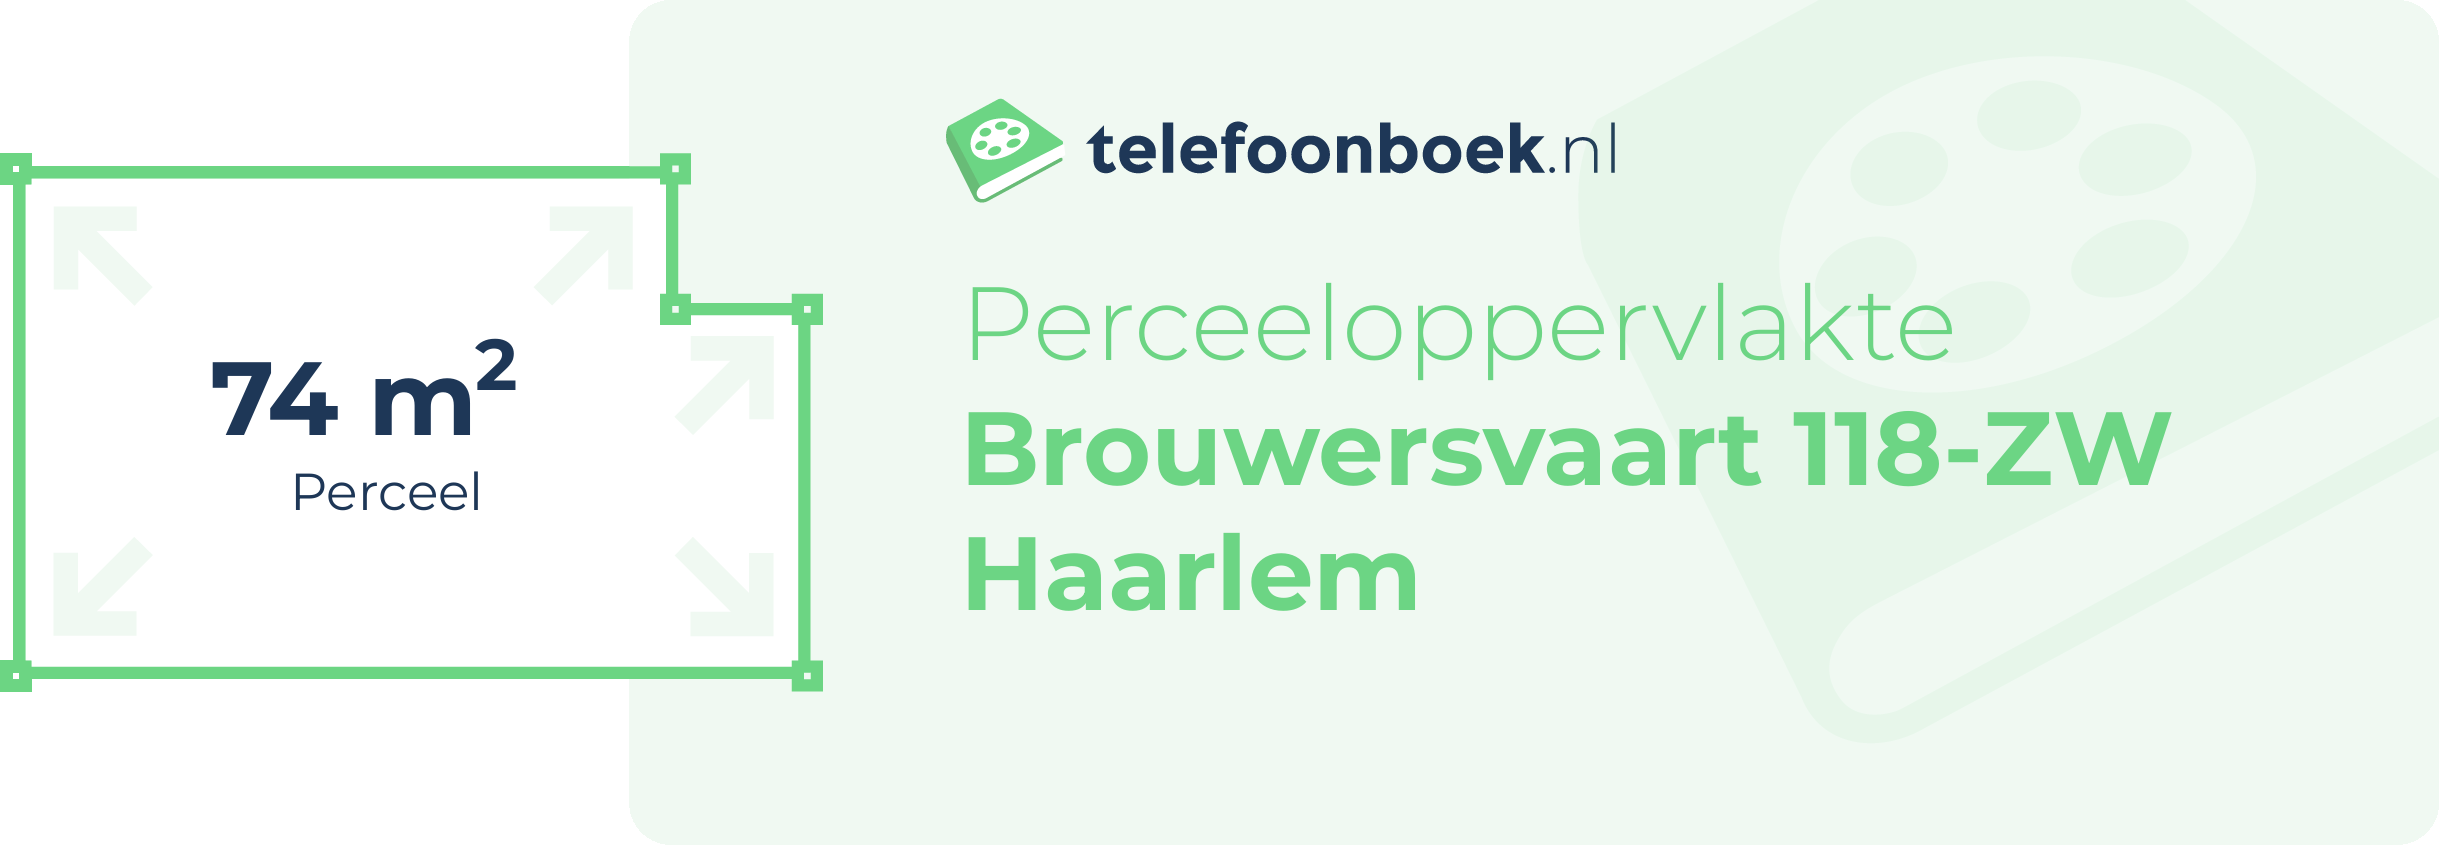 Perceeloppervlakte Brouwersvaart 118-ZW Haarlem